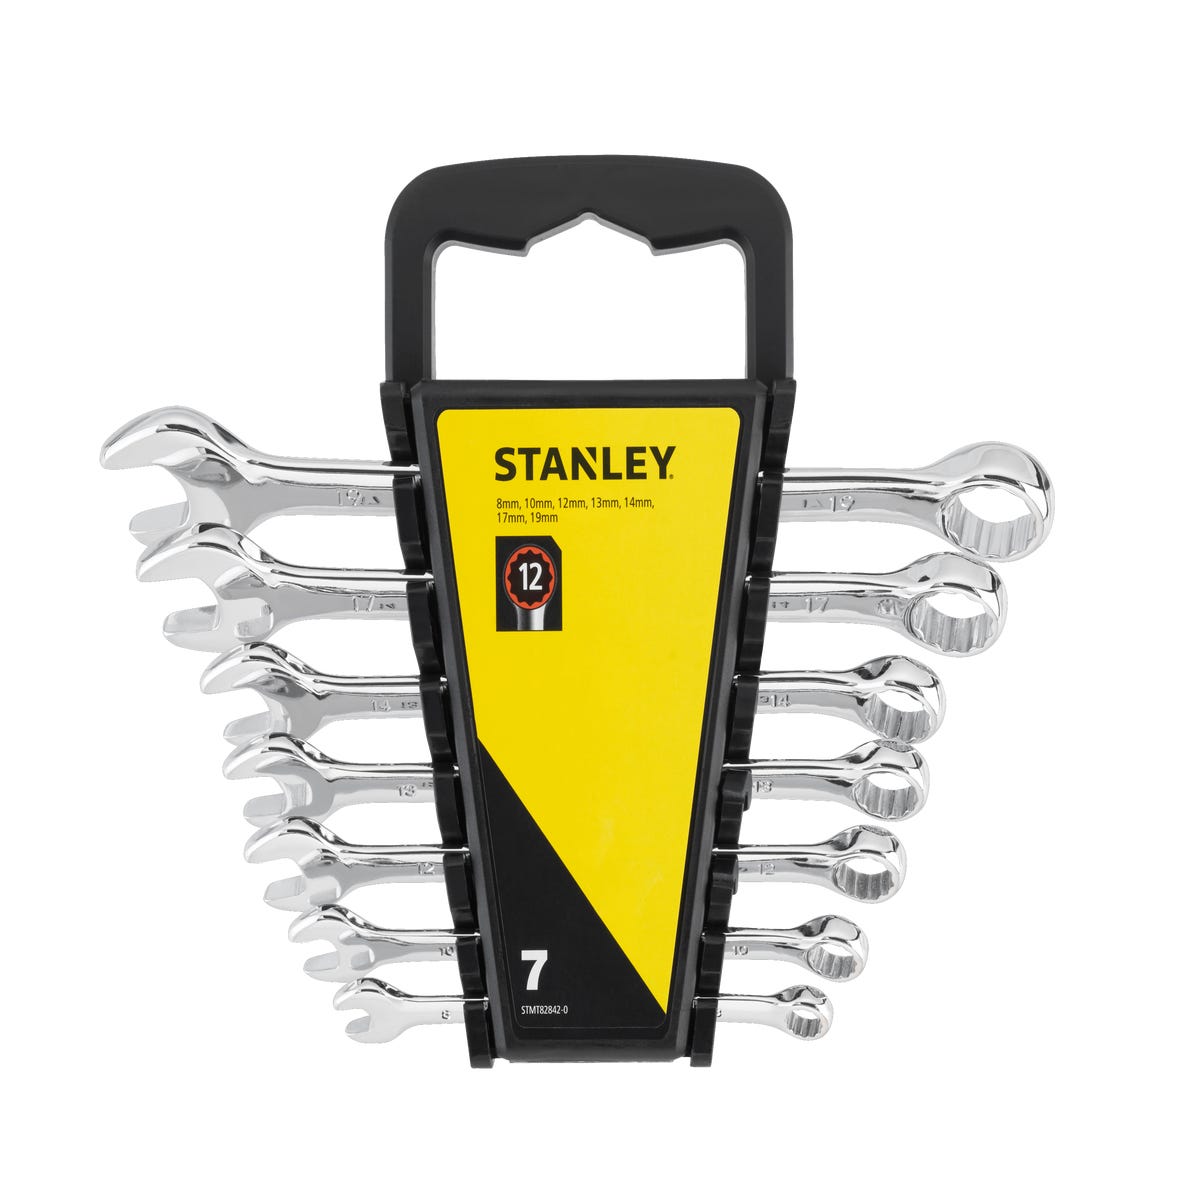 Zdjęcia - Zestaw narzędziowy Stanley Zestaw kluczy płaskich STMT82842-0 7 szt. 